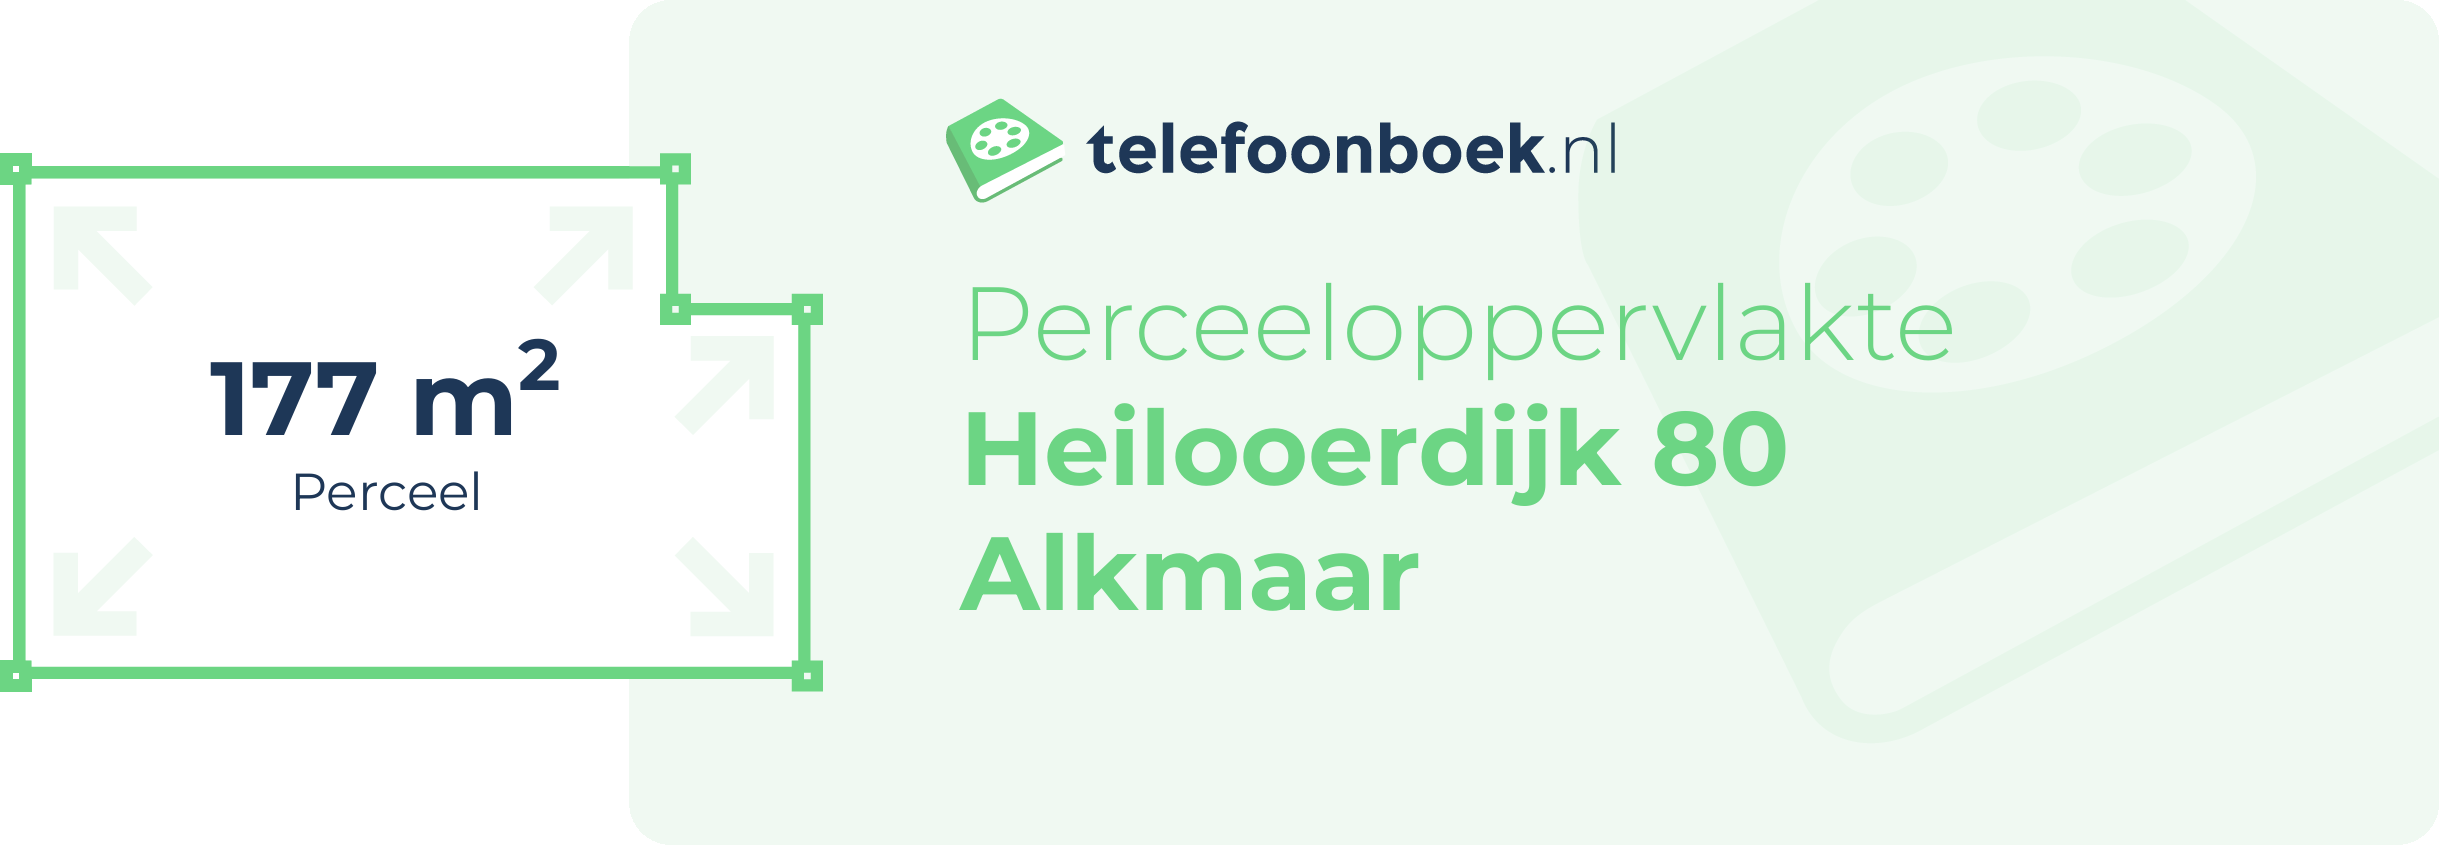 Perceeloppervlakte Heilooerdijk 80 Alkmaar